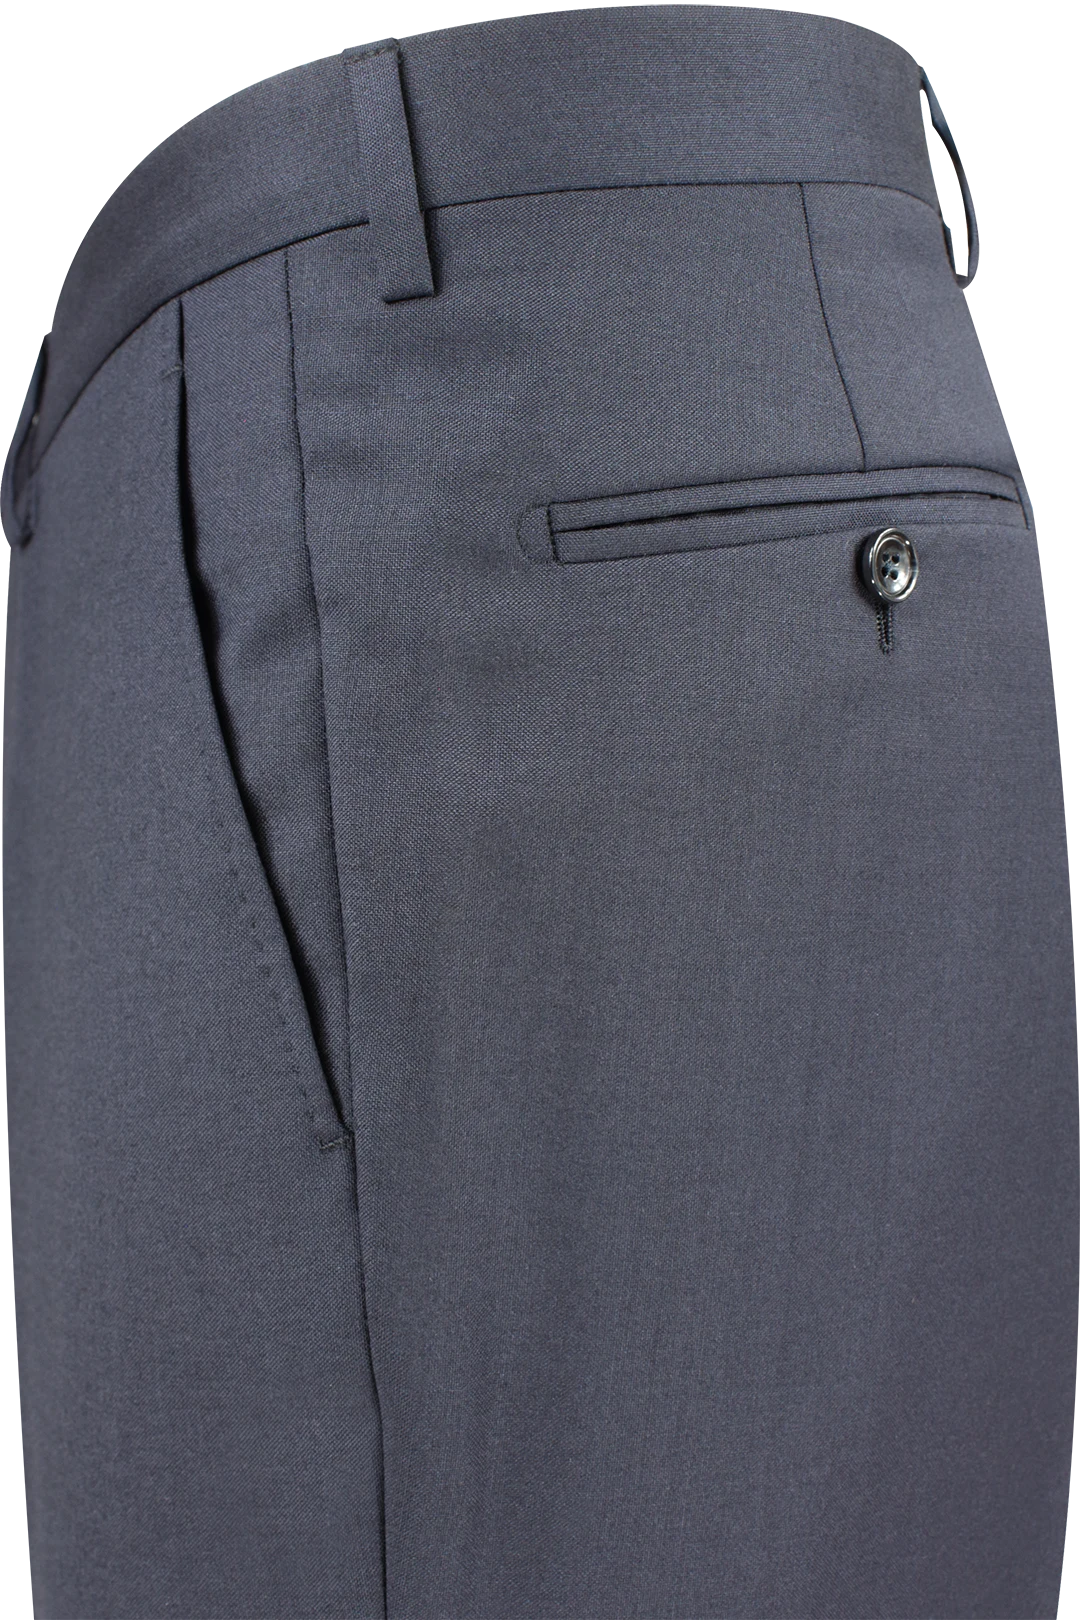 Pantalone in tela di lana vergine blu navy lato